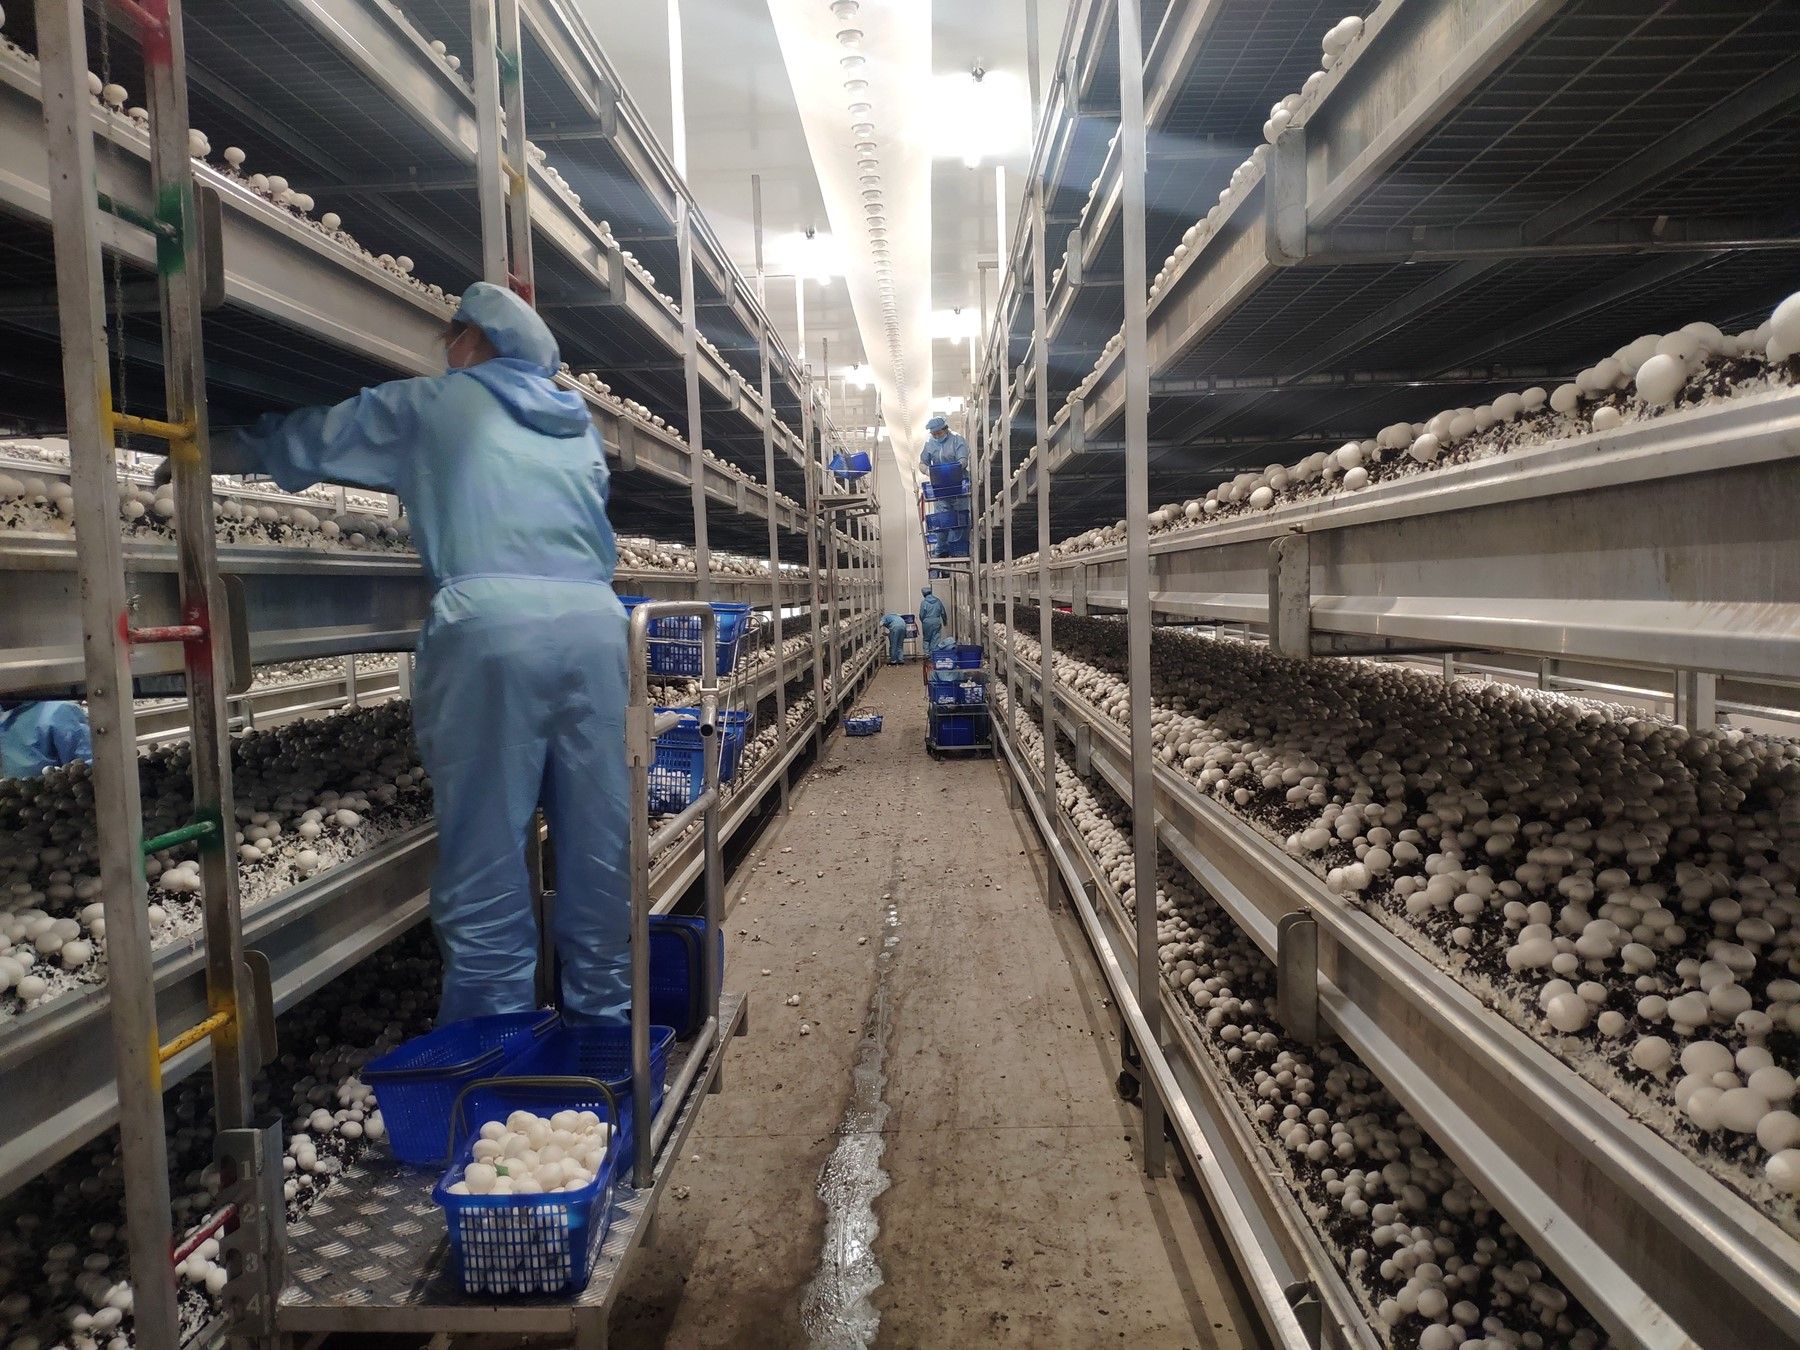 安徽众兴菌业科技有限公司员工正在采摘双孢蘑菇